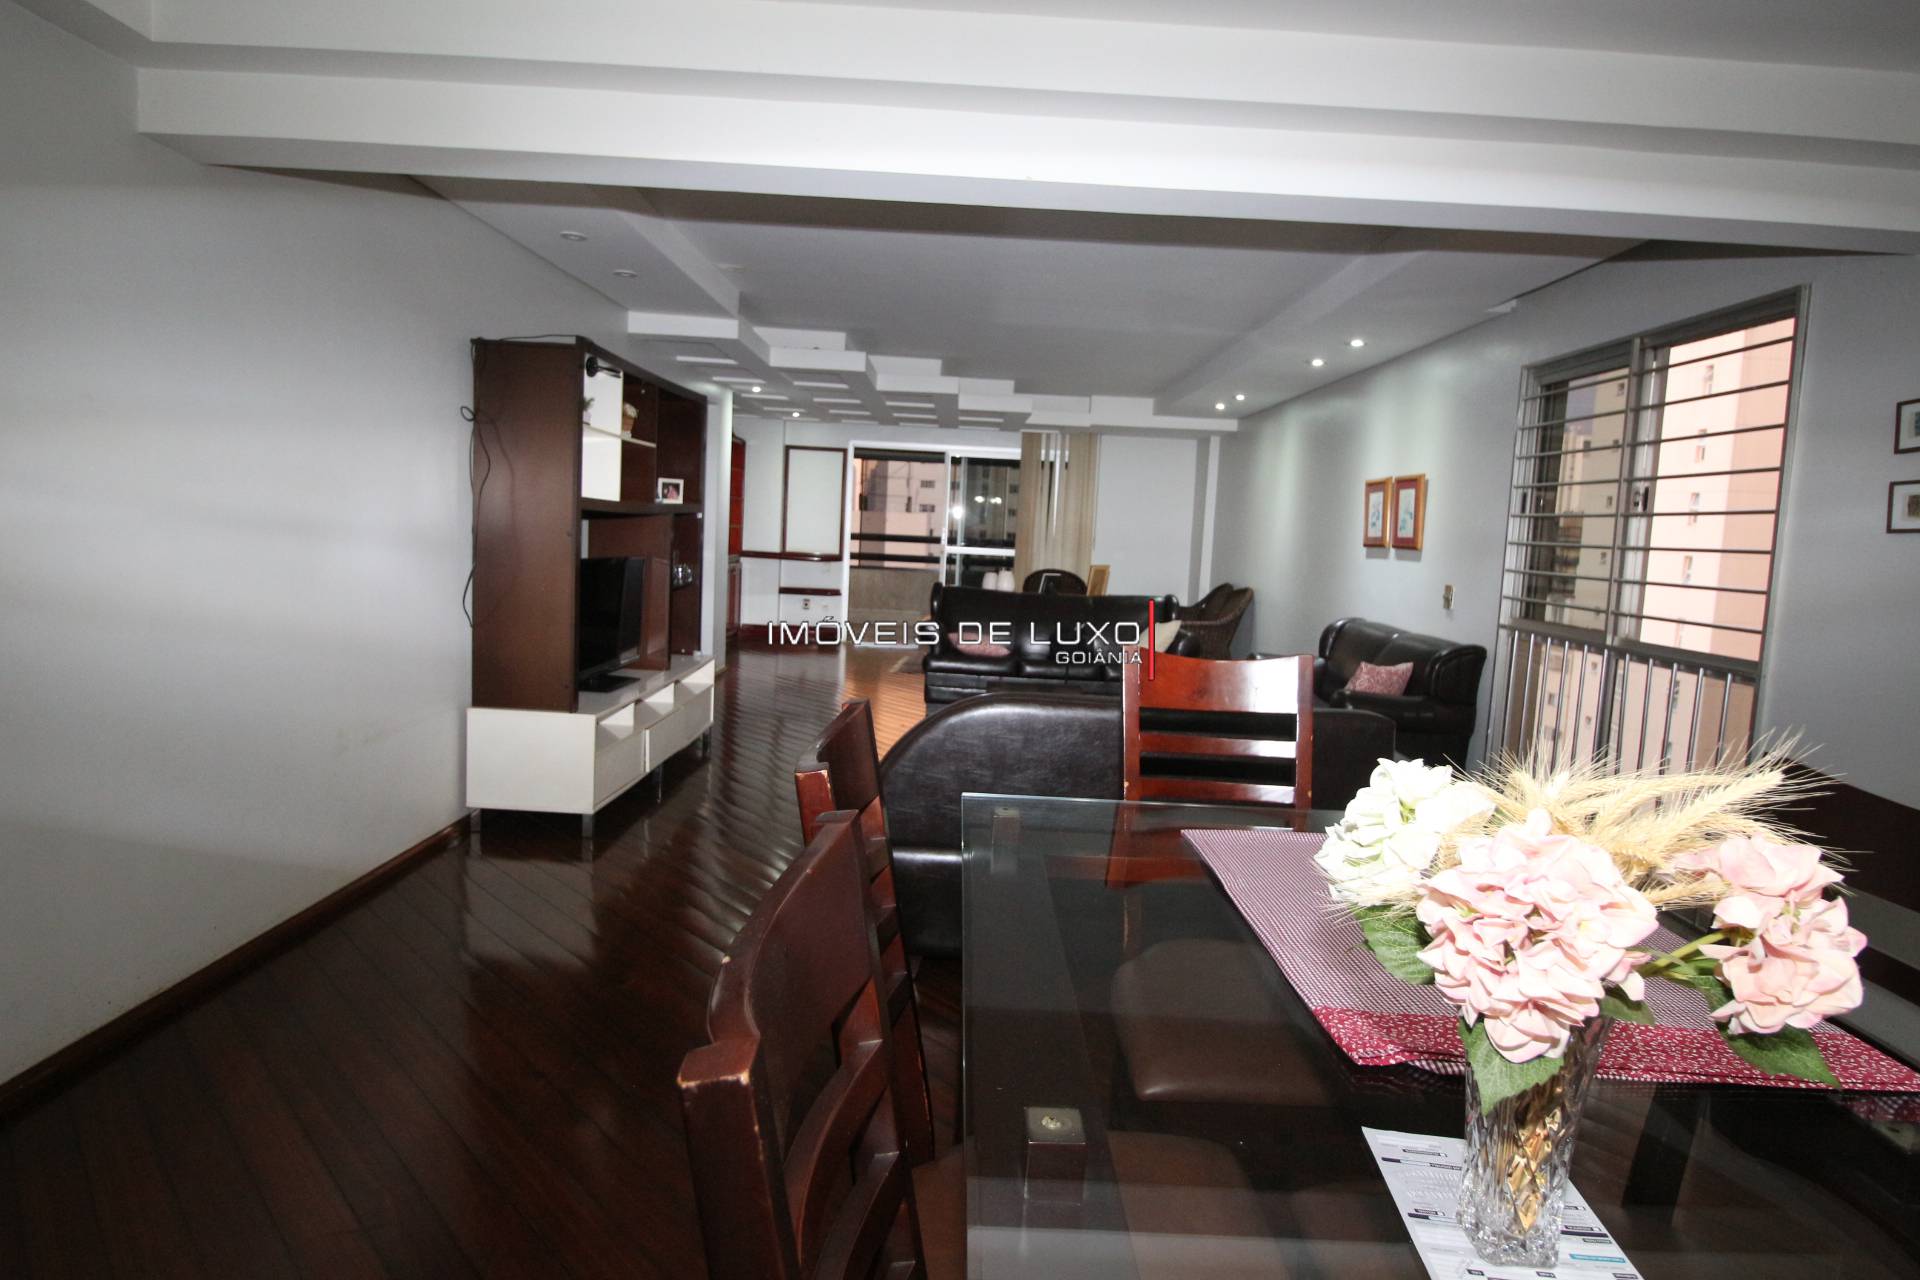 Imóveis de Luxo - Apartamento com 4 suítes no Setor Bueno